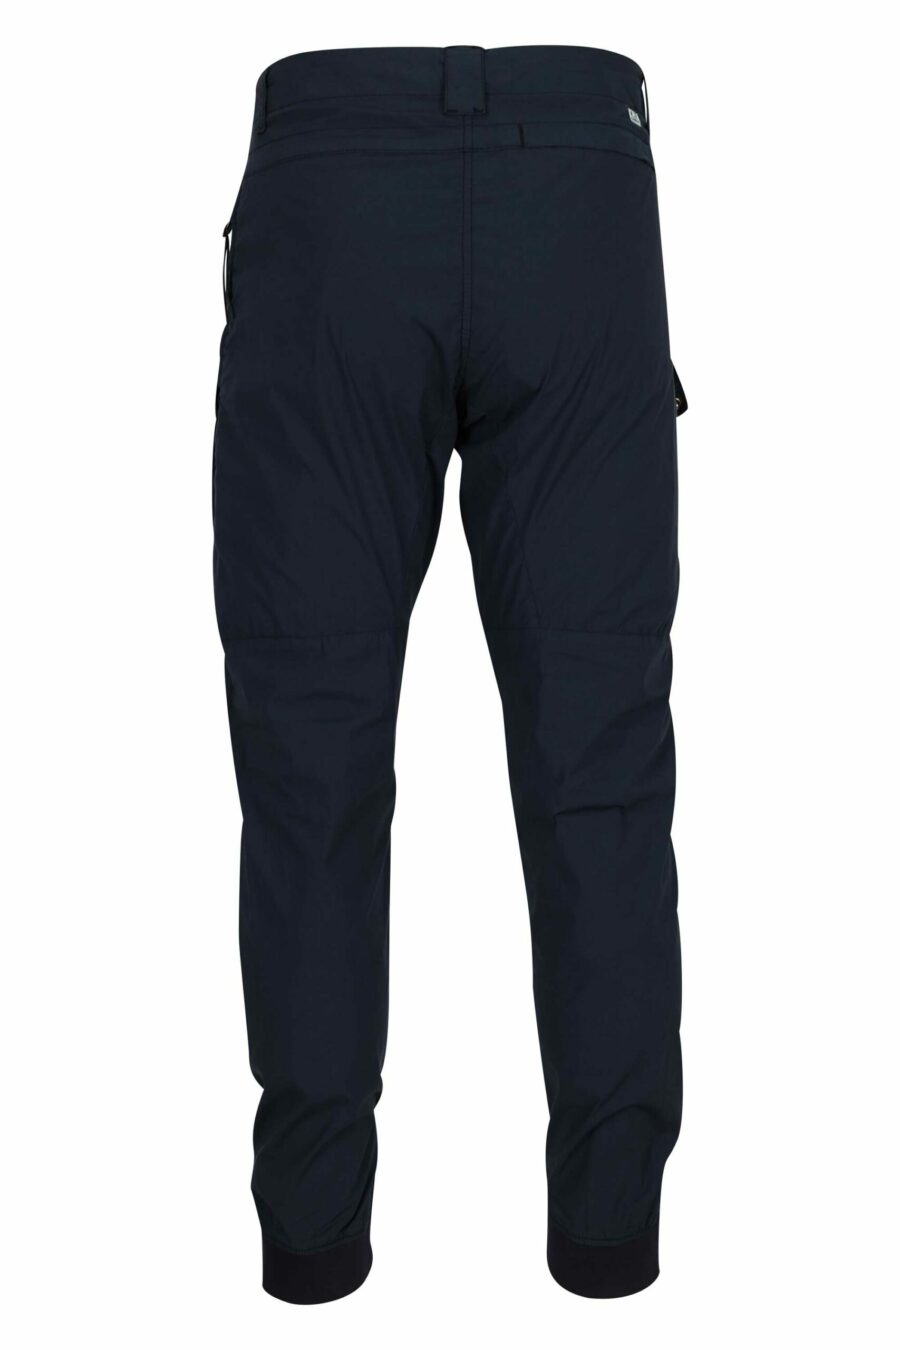 Pantalón azul oscuro con bolsillos frontales y minilogo lente - 7620943806397 1 scaled